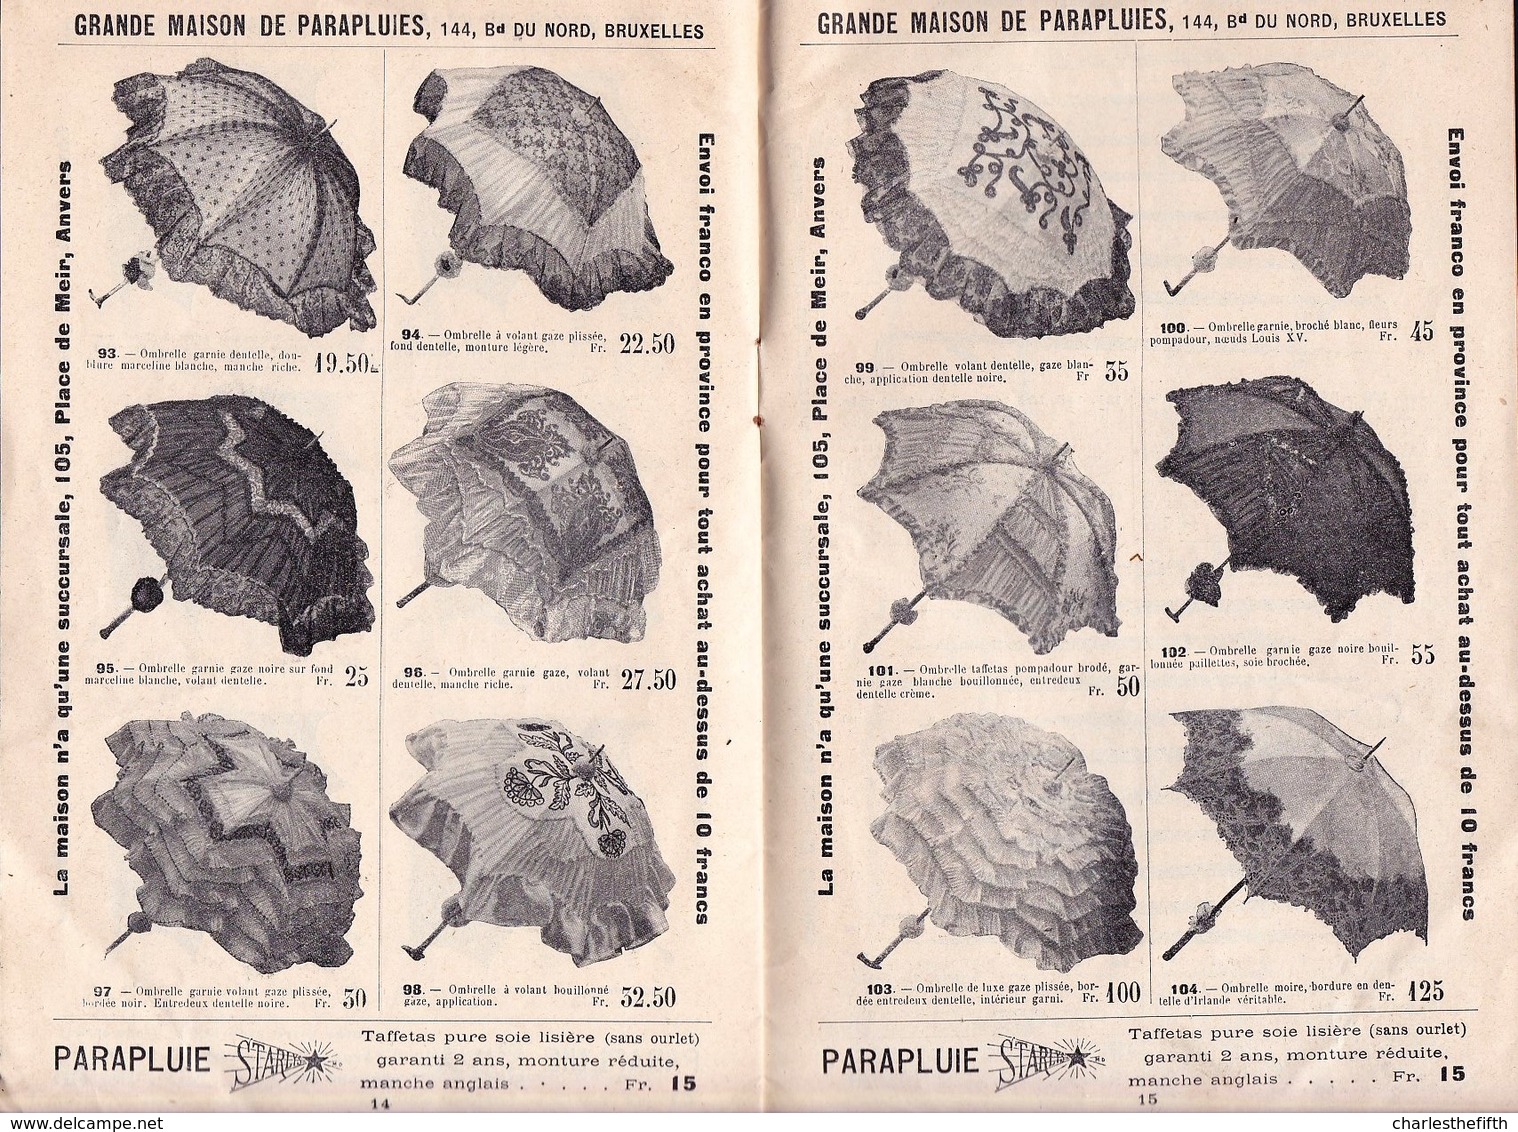 1903 LIVRET DE PUBLICITE DE PARAPLUIE STARLYS - SMALL BOOKLET OF PUBLICITY FOR UMBRELLA - 16 Pages - Advertising